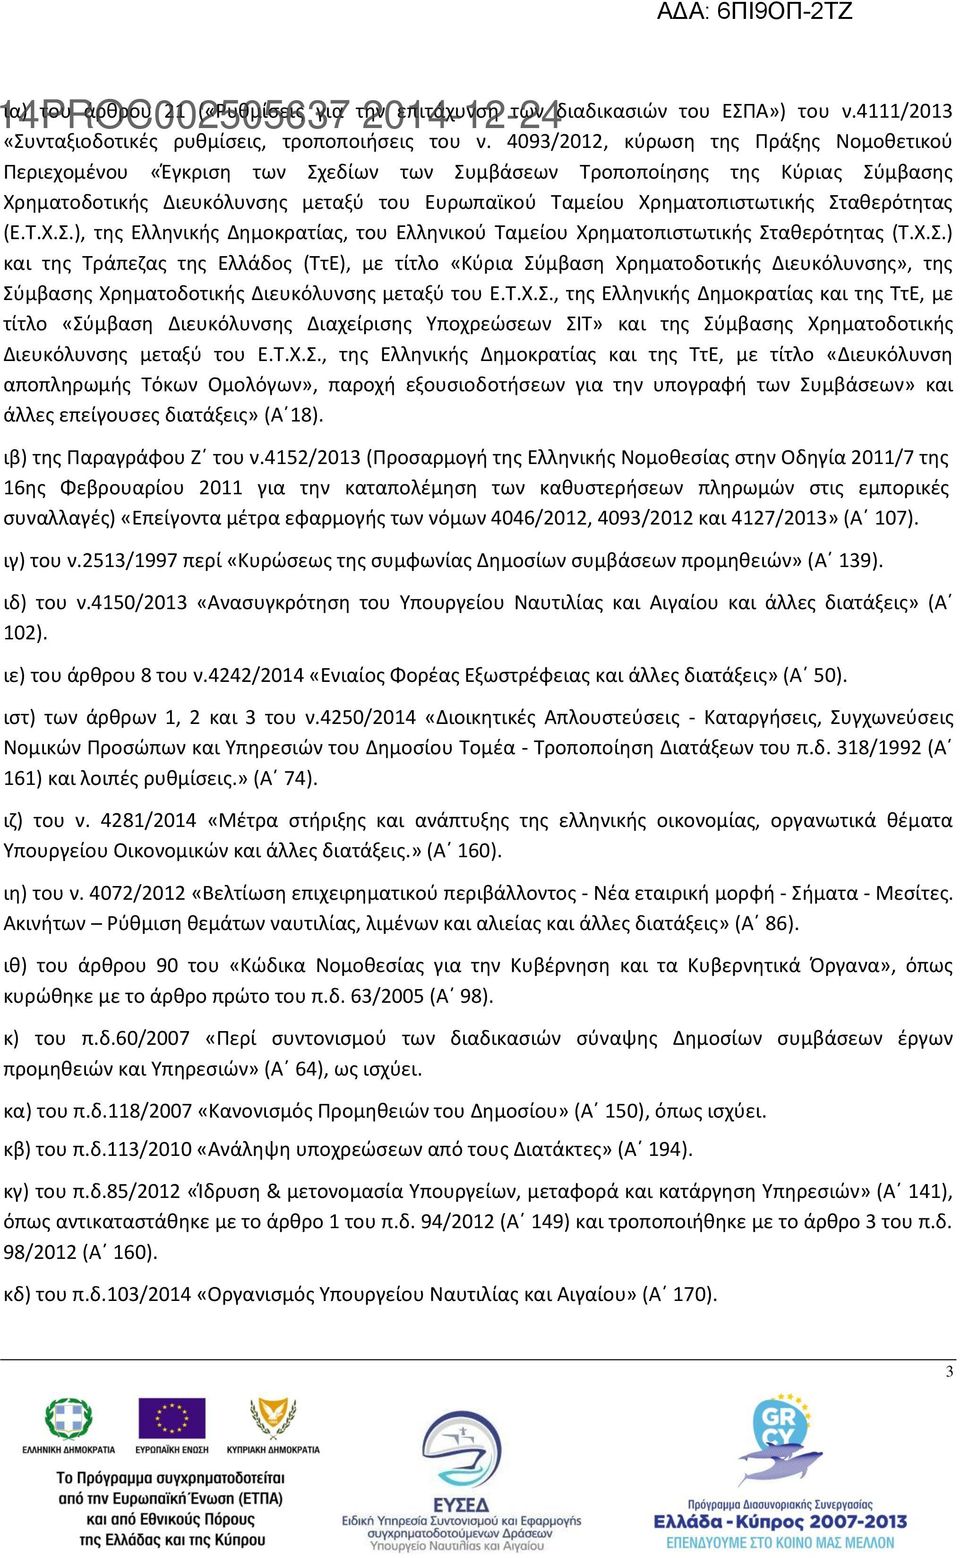 Σταθερότητας (Ε.Τ.Χ.Σ.), της Ελληνικής Δημοκρατίας, του Ελληνικού Ταμείου Χρηματοπιστωτικής Σταθερότητας (Τ.Χ.Σ.) και της Τράπεζας της Ελλάδος (ΤτΕ), με τίτλο «Κύρια Σύμβαση Χρηματοδοτικής Διευκόλυνσης», της Σύμβασης Χρηματοδοτικής Διευκόλυνσης μεταξύ του Ε.